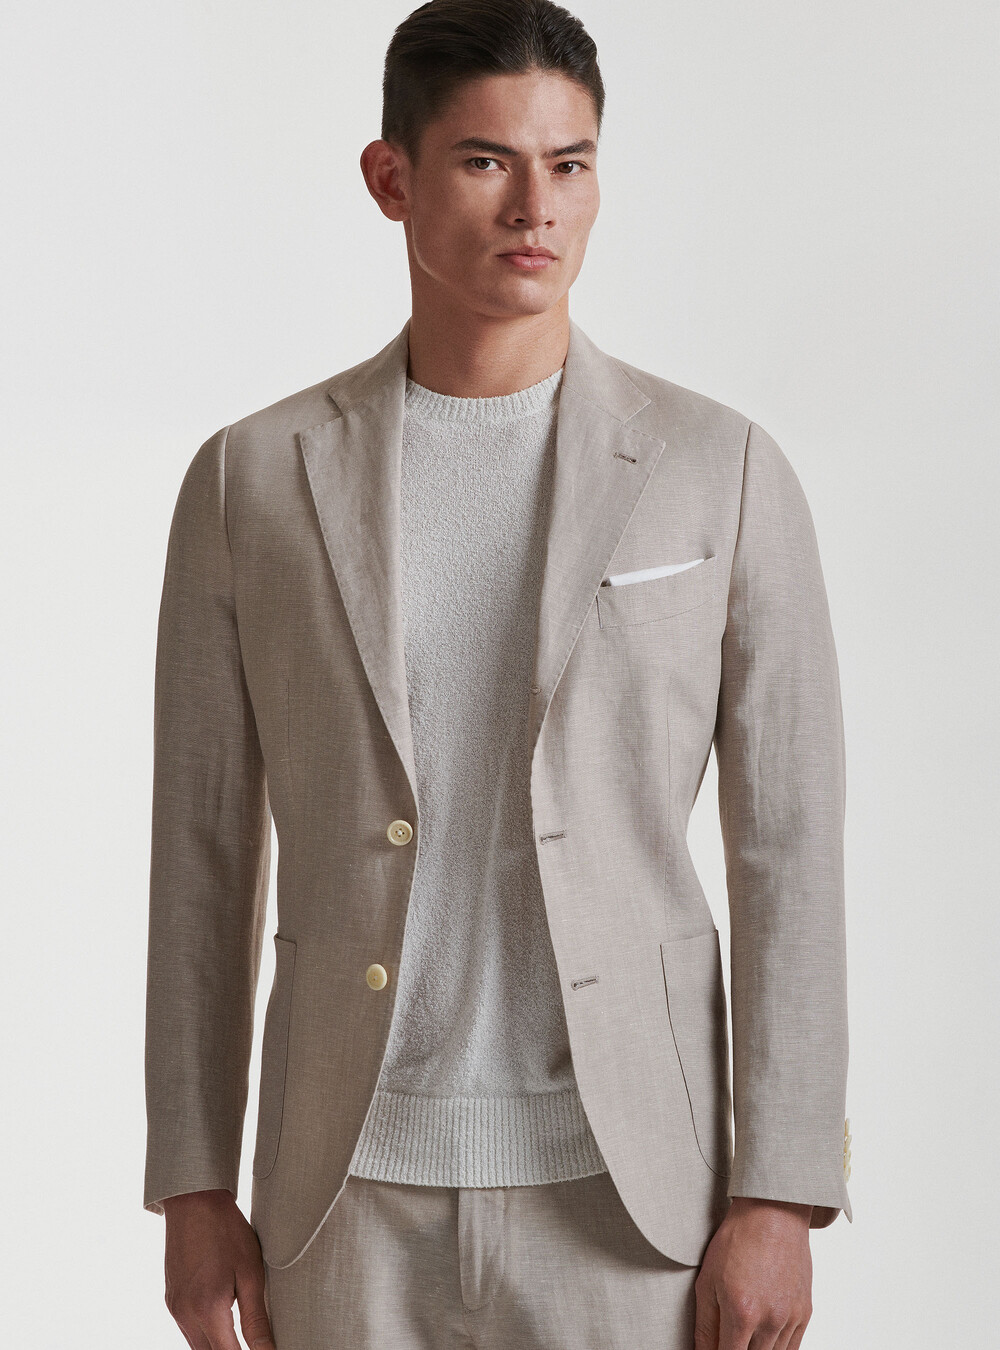 Wool and linen suit blazer DUEMILAGORI, GutteridgeEU